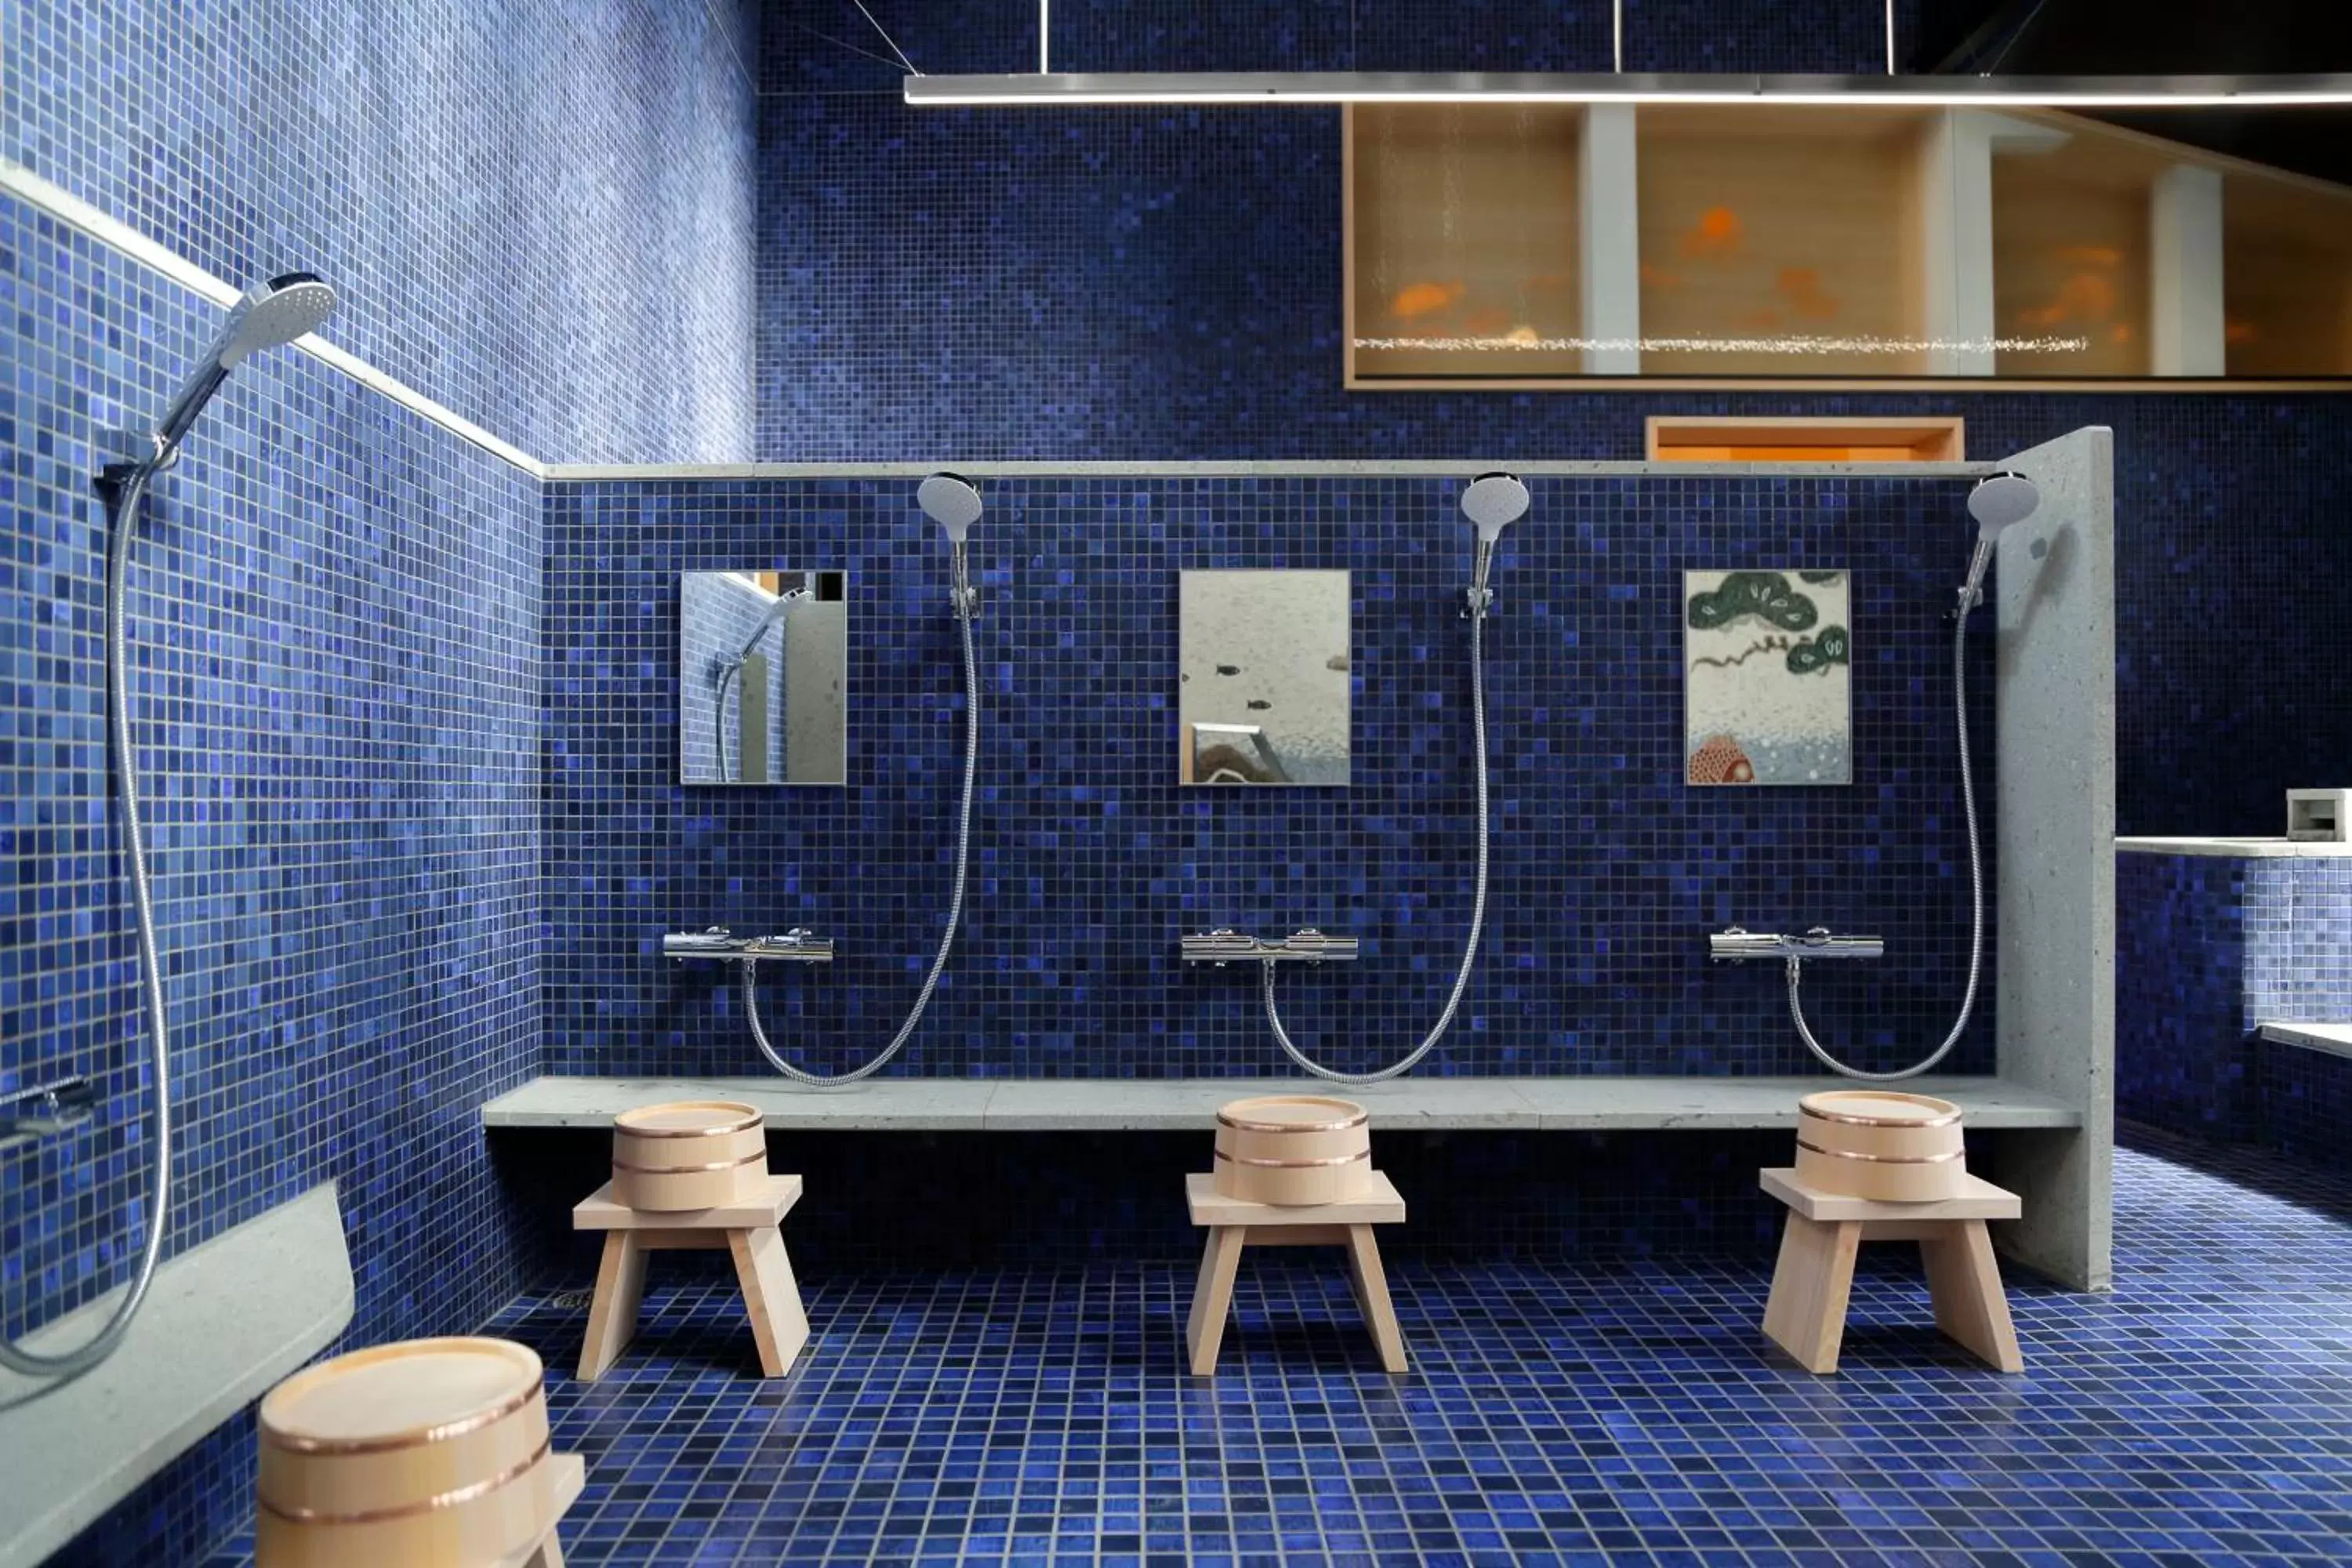 Bathroom in yubune